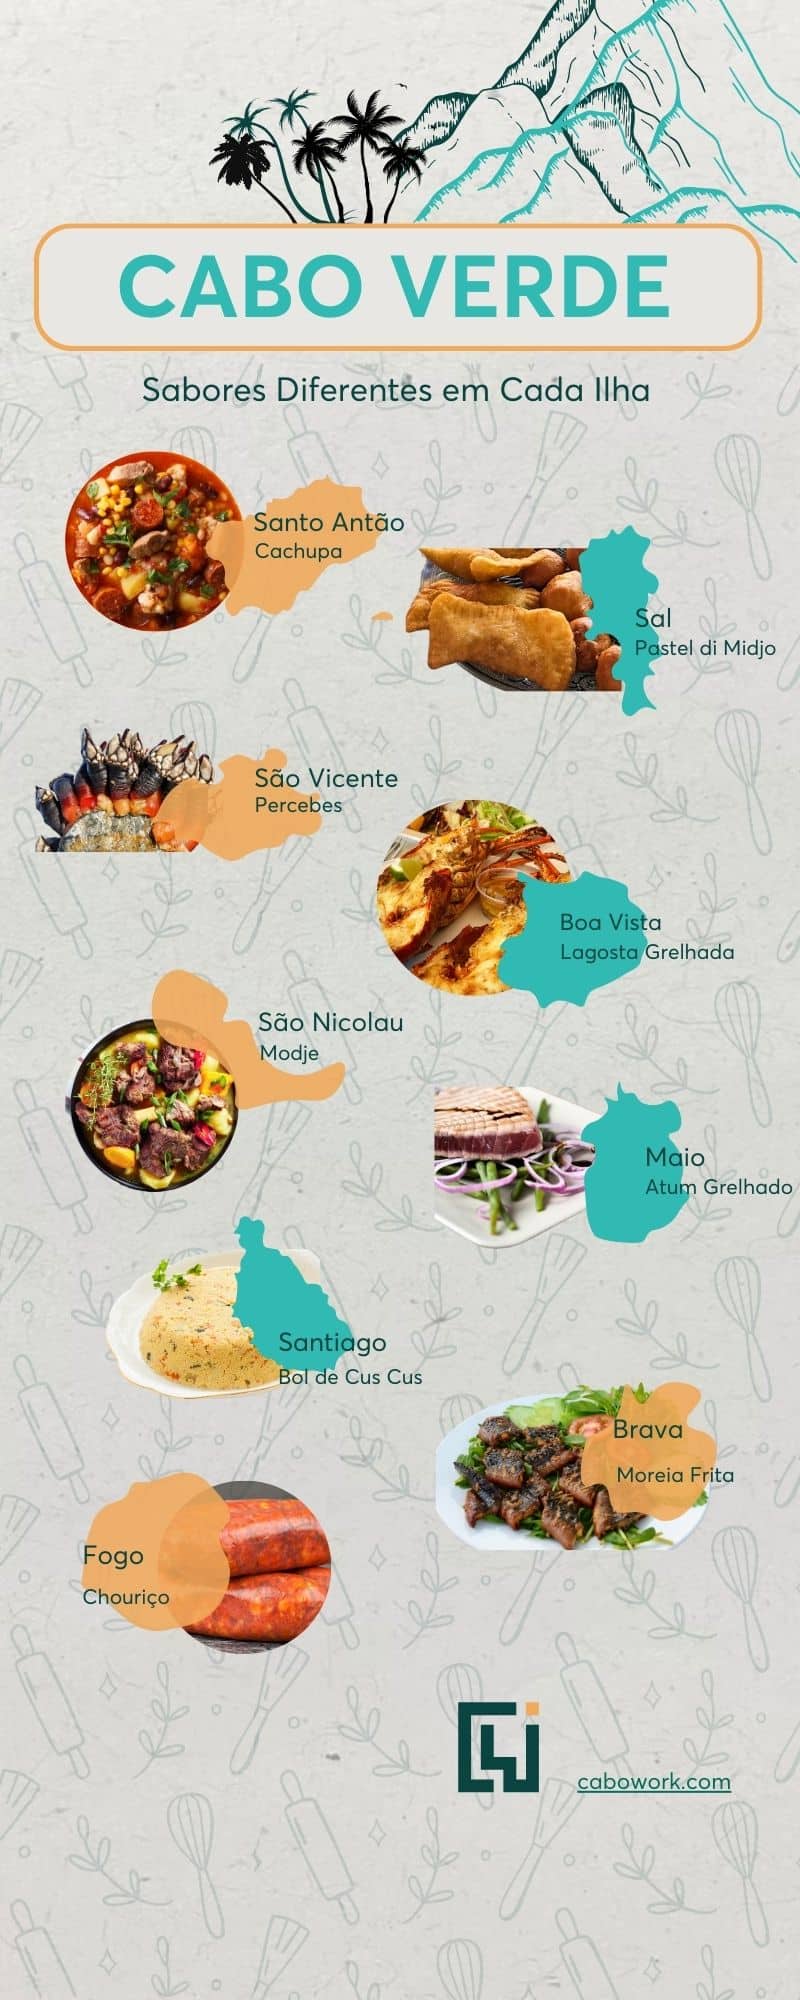 Os sabores de cada ilha - comidas exóticas e receitas com origem cabo-verdiana